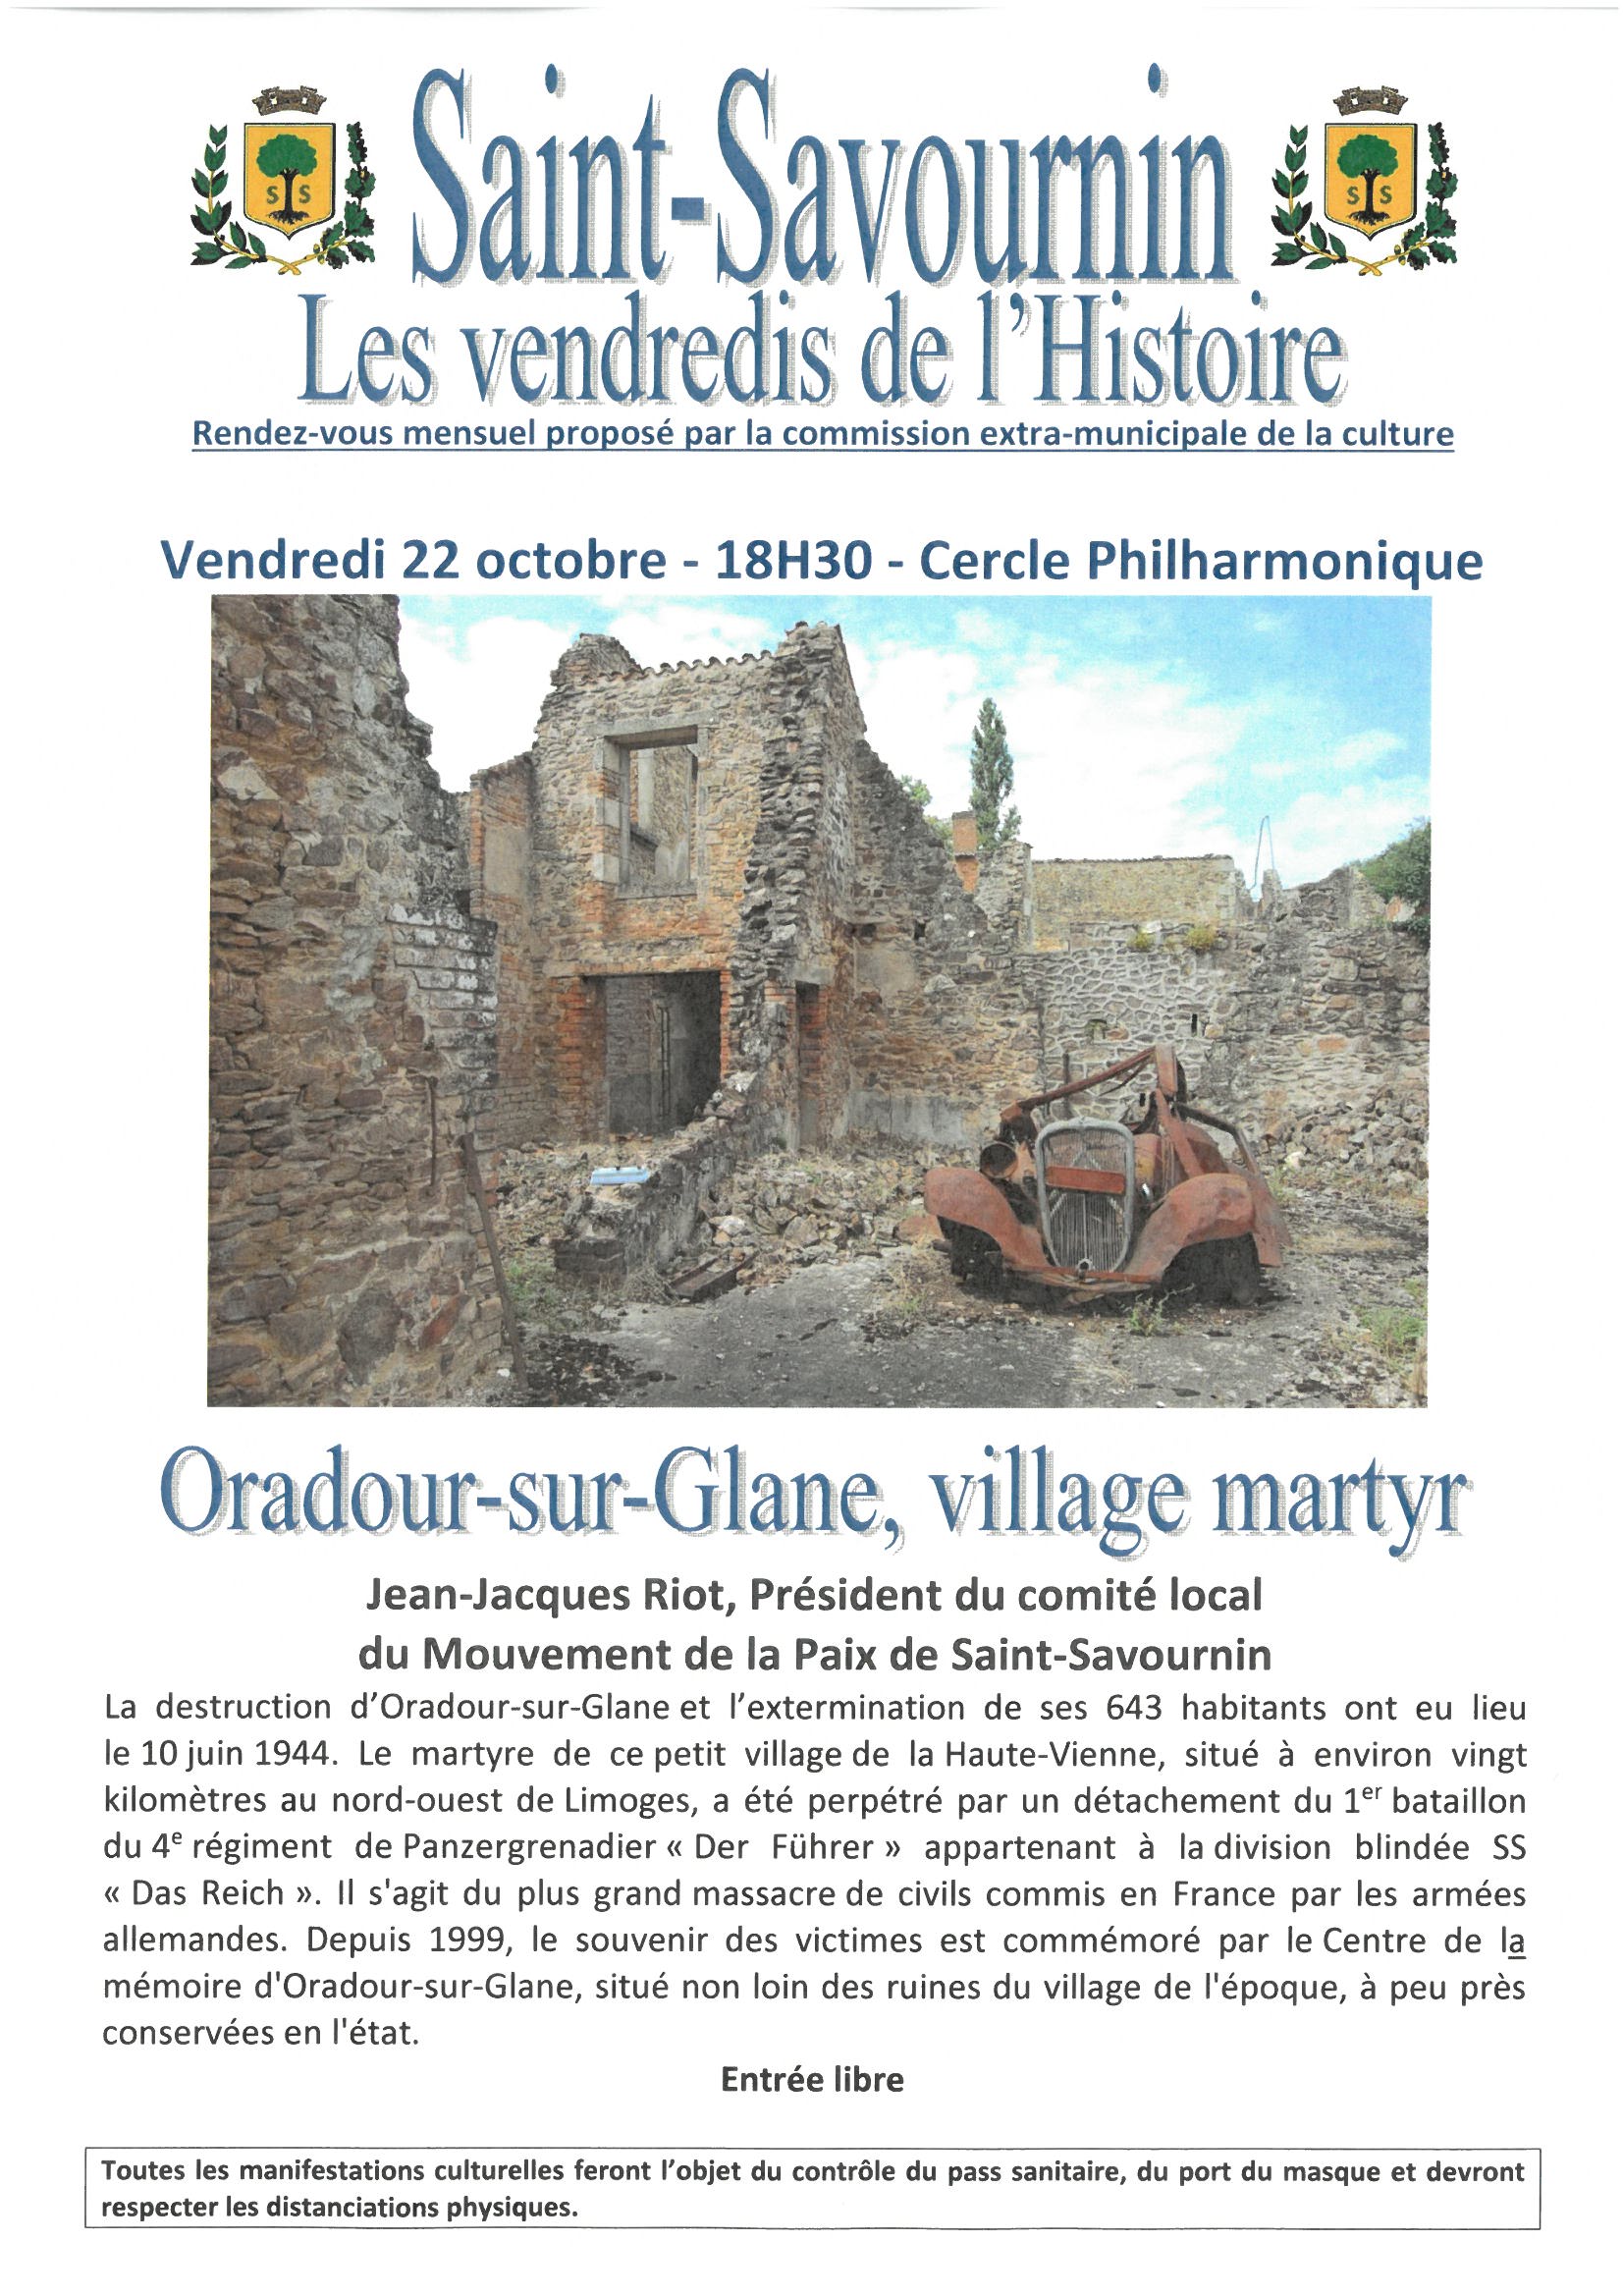 Mairie Saint Savournin 22 oct 21 rendez-vous de l'histoire avec Oadour-sur-Glane, village martyr 18h30